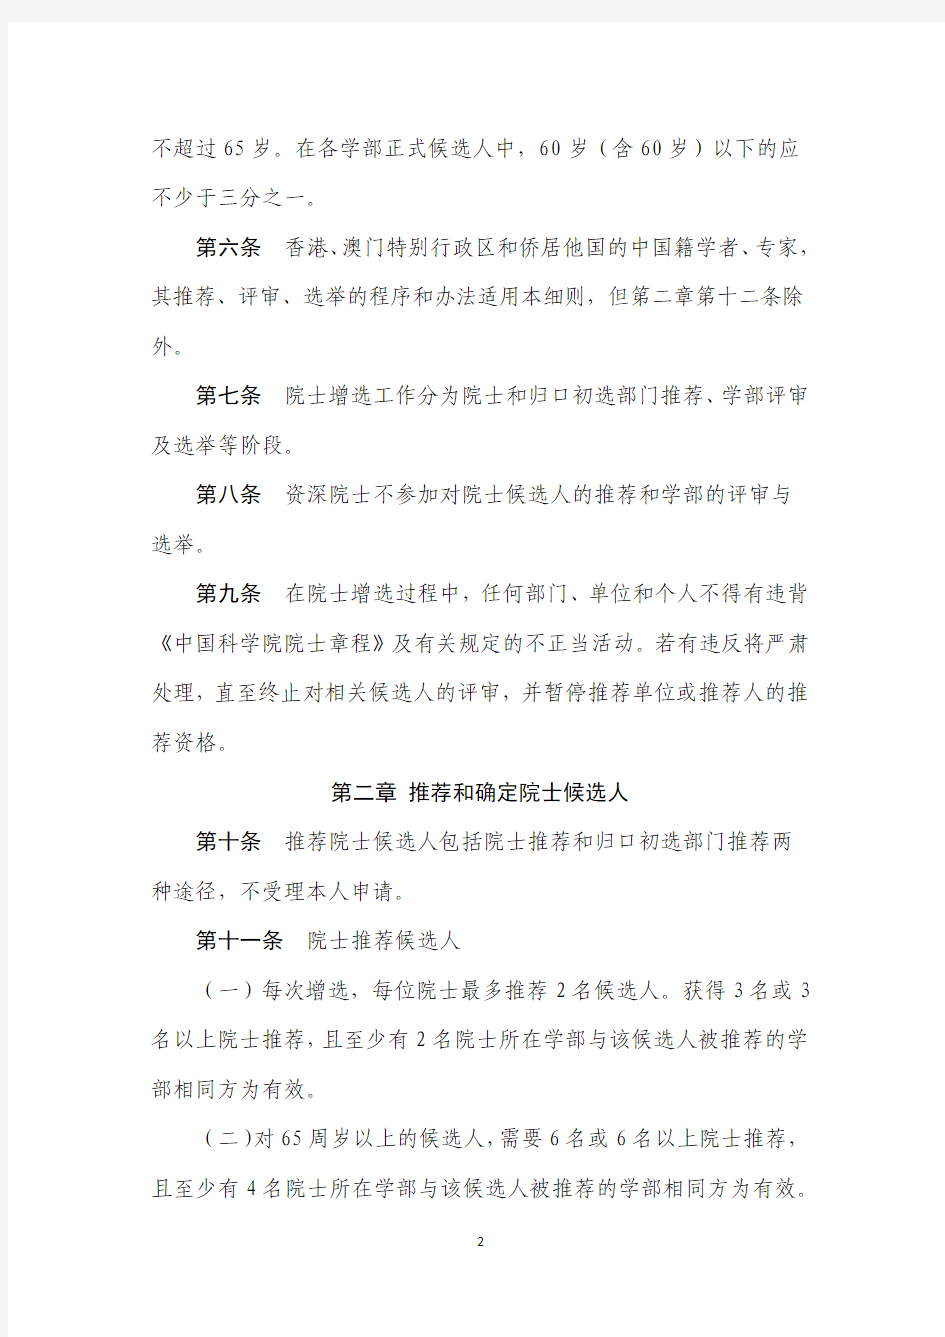 中国科学院院士增选工作实施细则